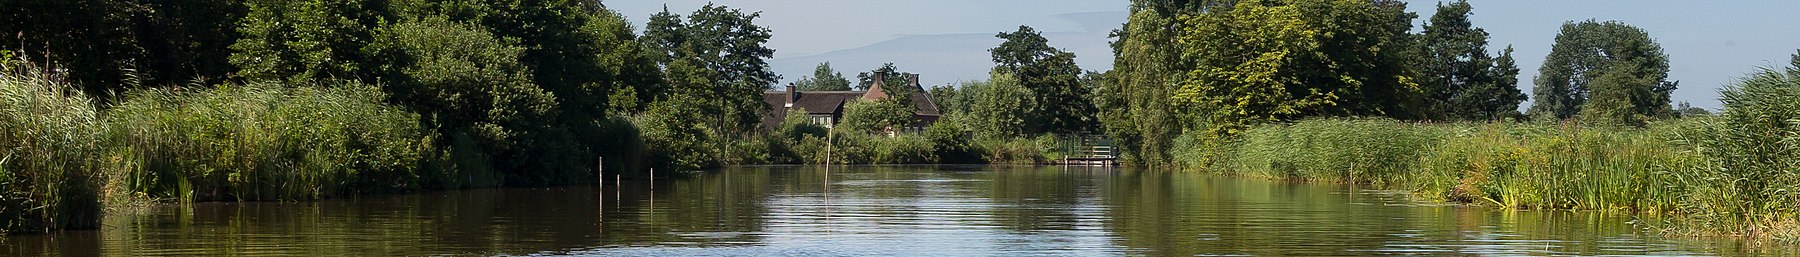 Woerdense Verlaat, rzeka Meije w pobliżu Bosweg photo12 2017-07-09 11.01 pagebanner.jpg